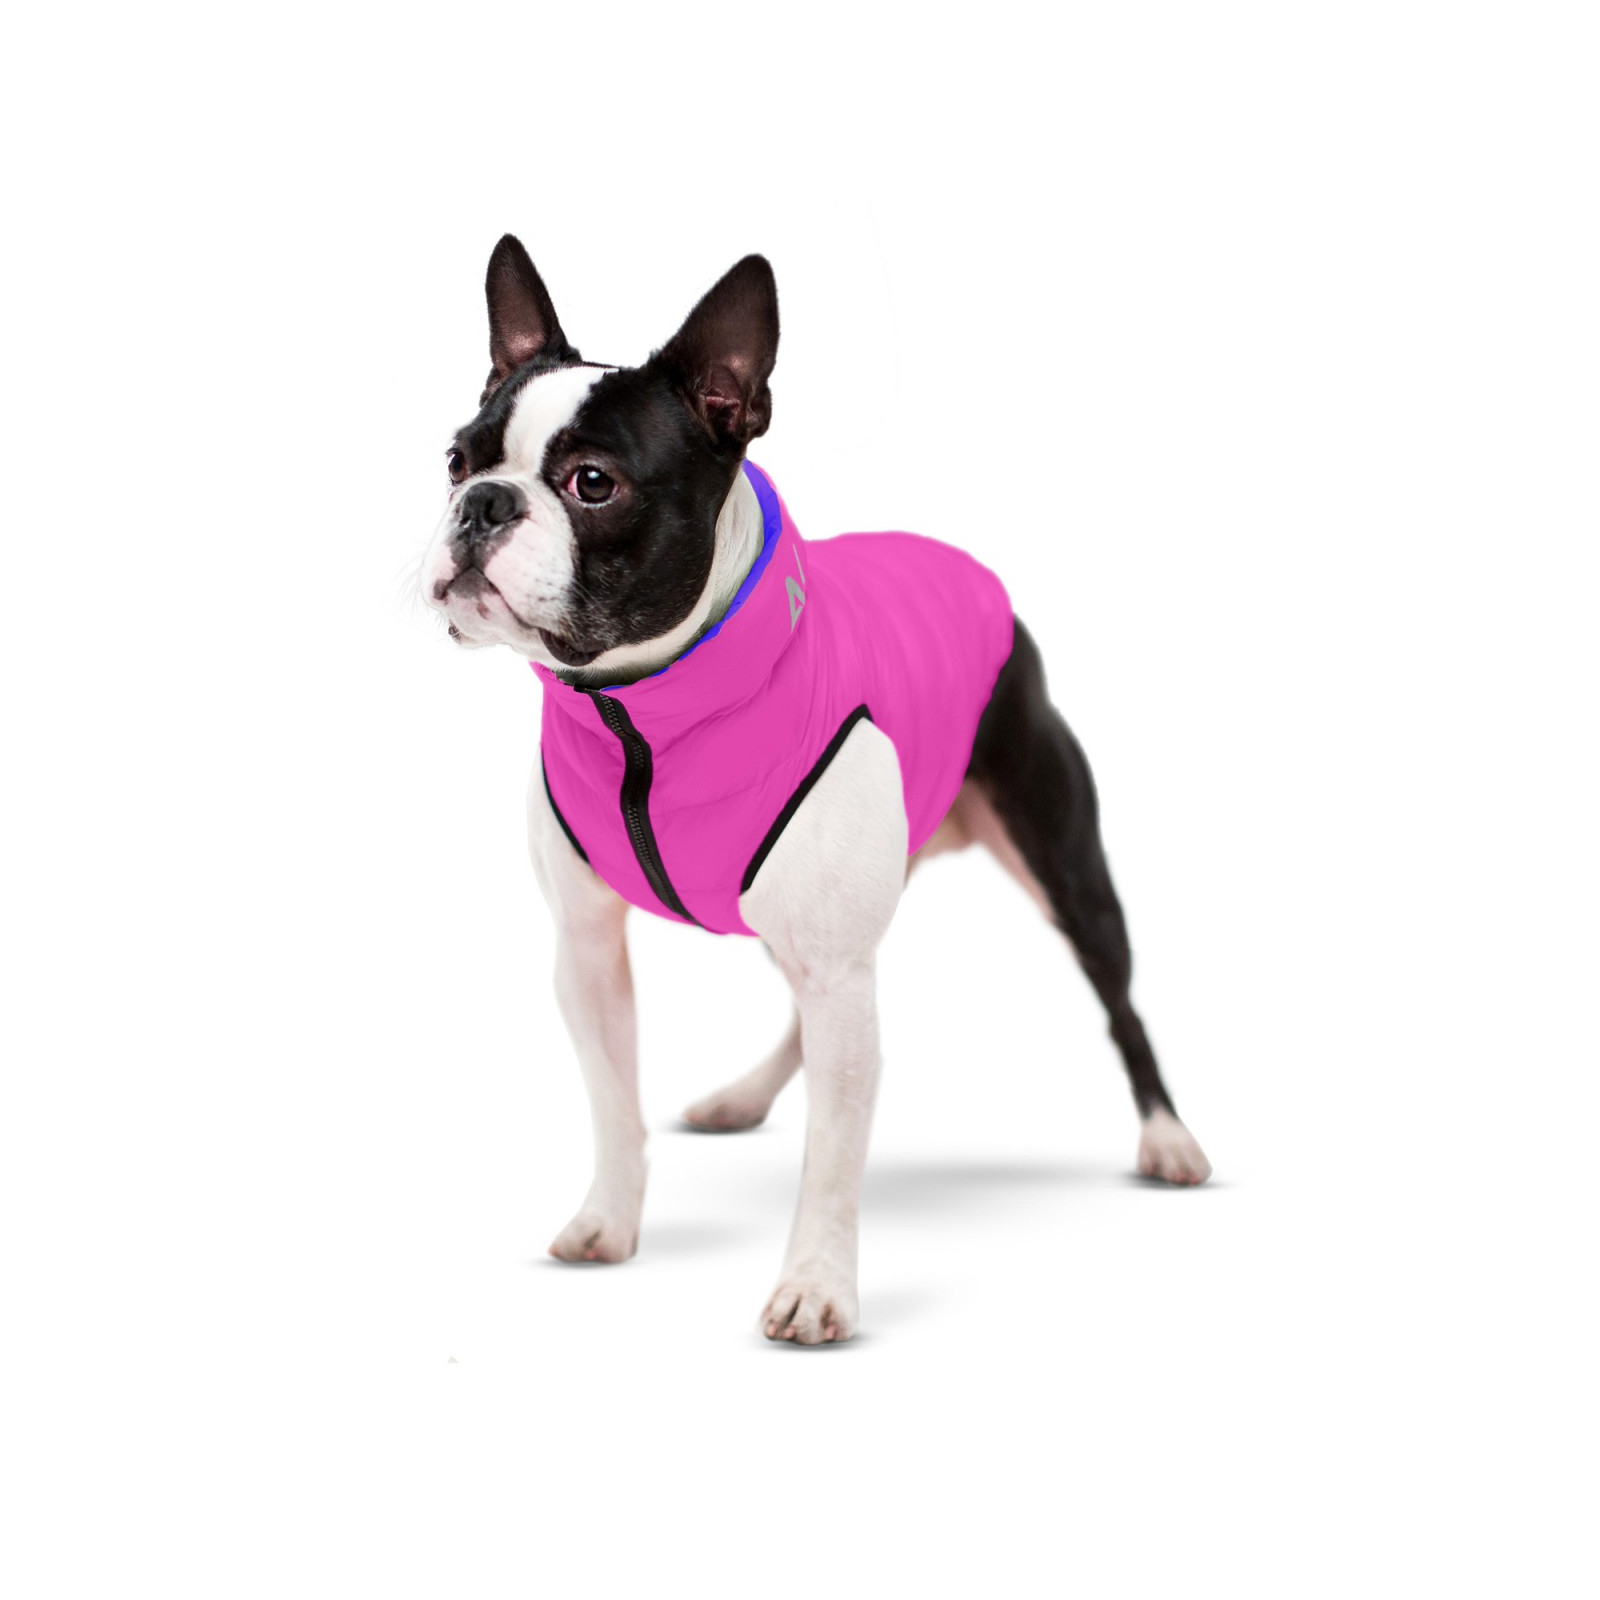 Курточка для животных Airy Vest двусторонняя М 50 фиолетово-розовая (1627) изображение 2